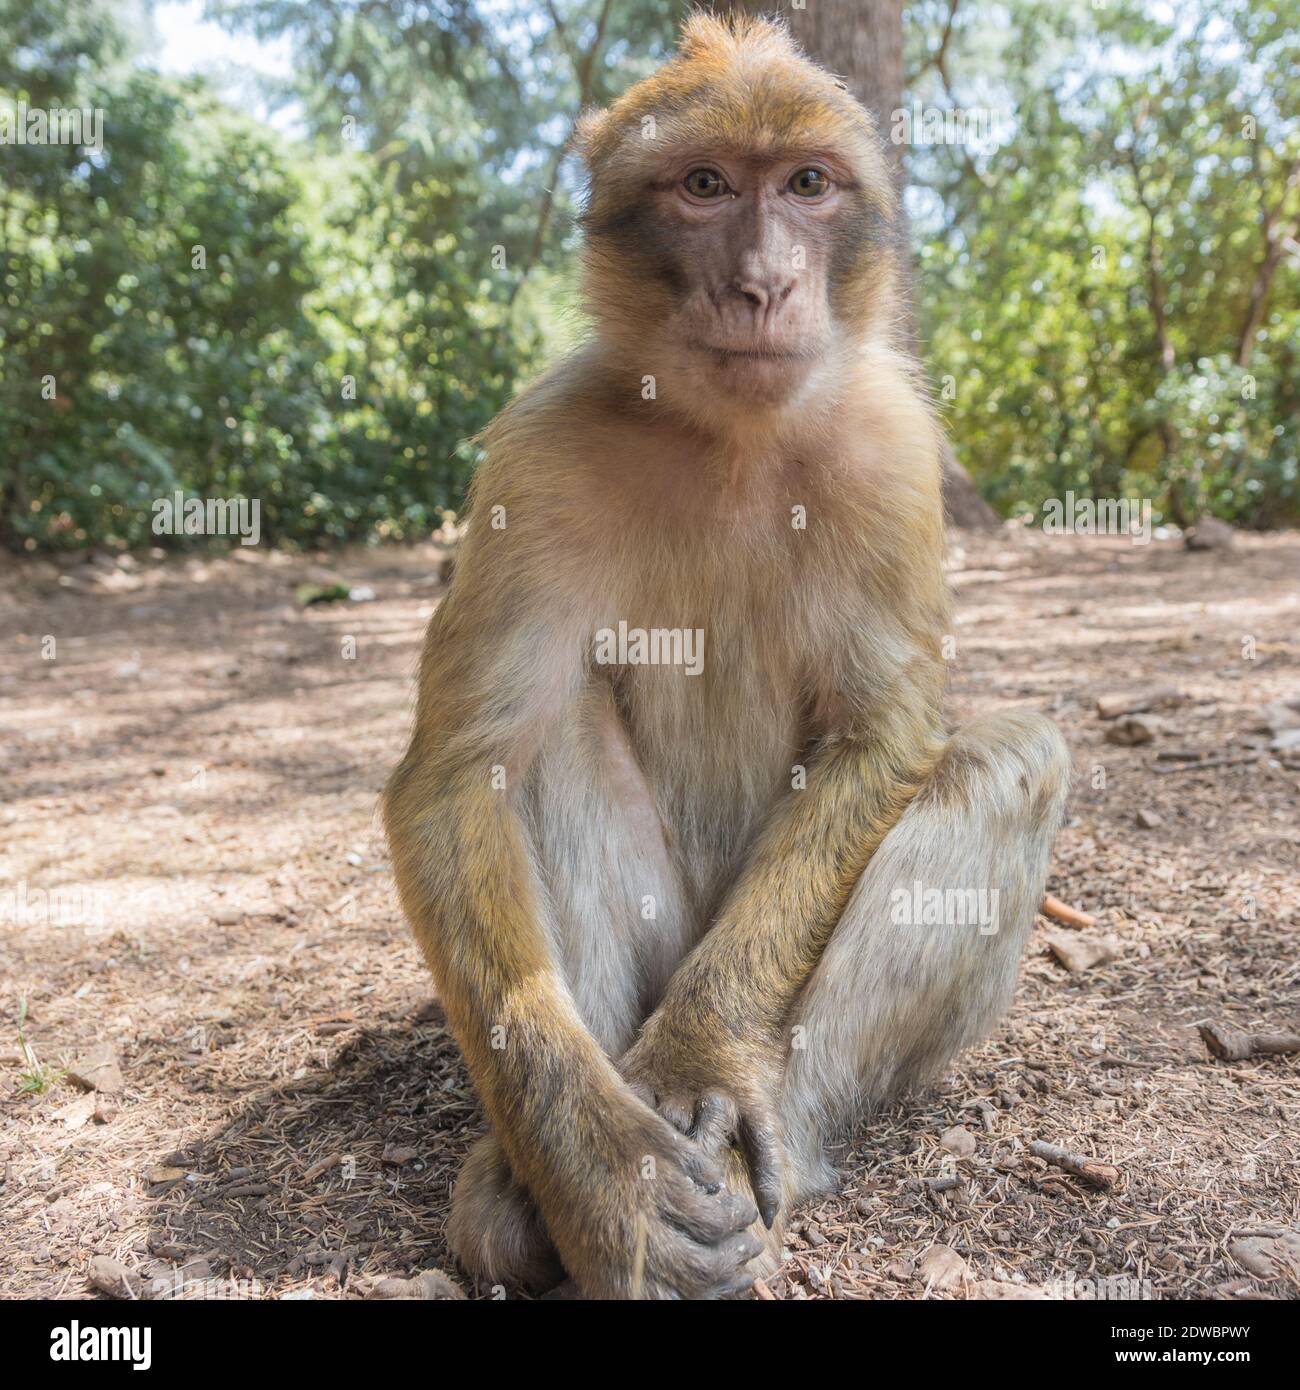 Le jeune singe de Barbarie Macaque est assis sur le sol dans la forêt de cèdres de la chaîne du Mid Atlas Azrou, Maroc Banque D'Images